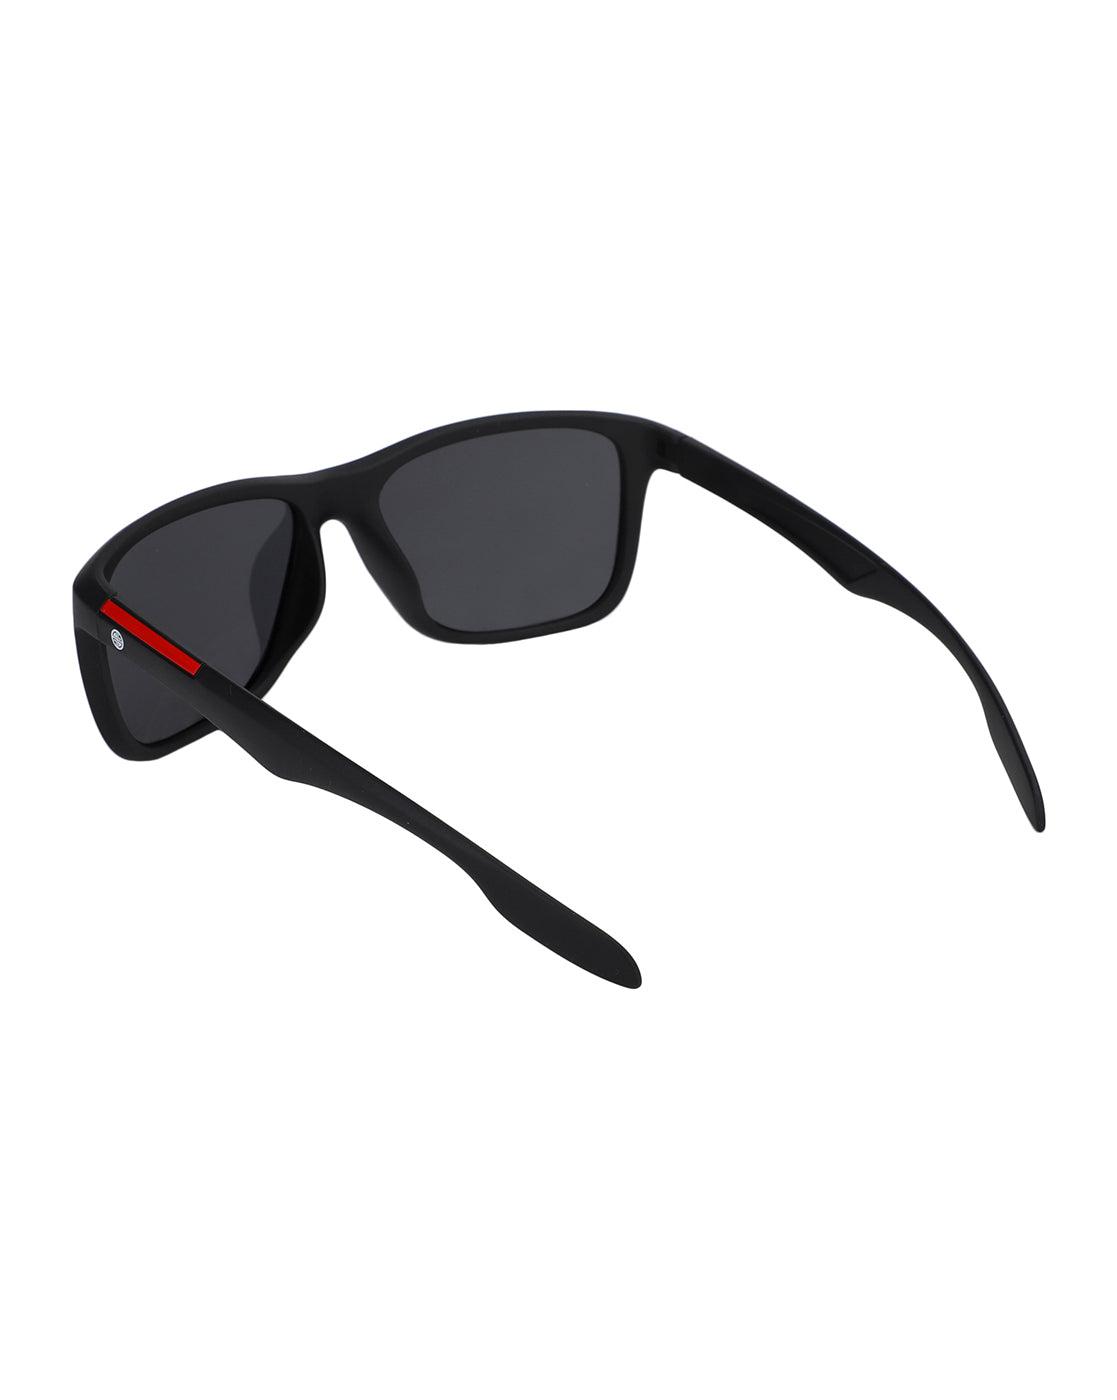 Carlton London Square Uv Protected Rectangle Sunglasses For Men